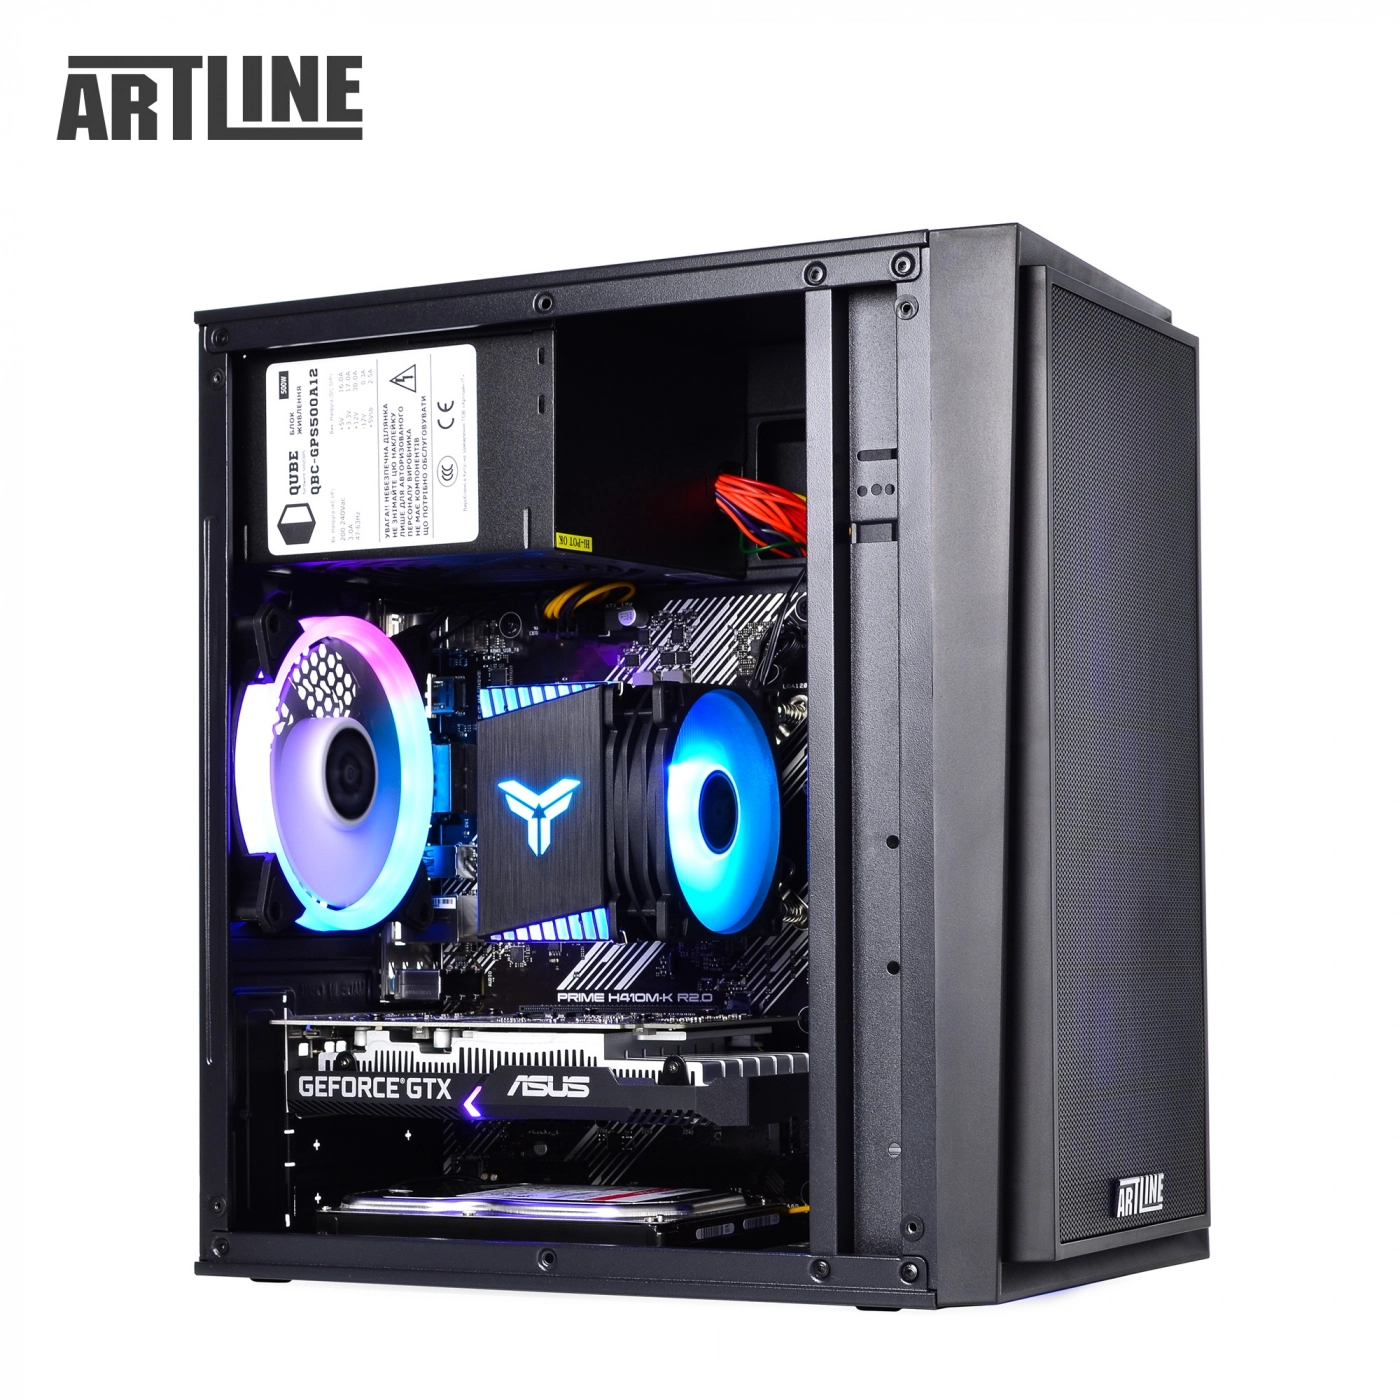 Купить Компьютер ARTLINE Gaming X43v23 - фото 13